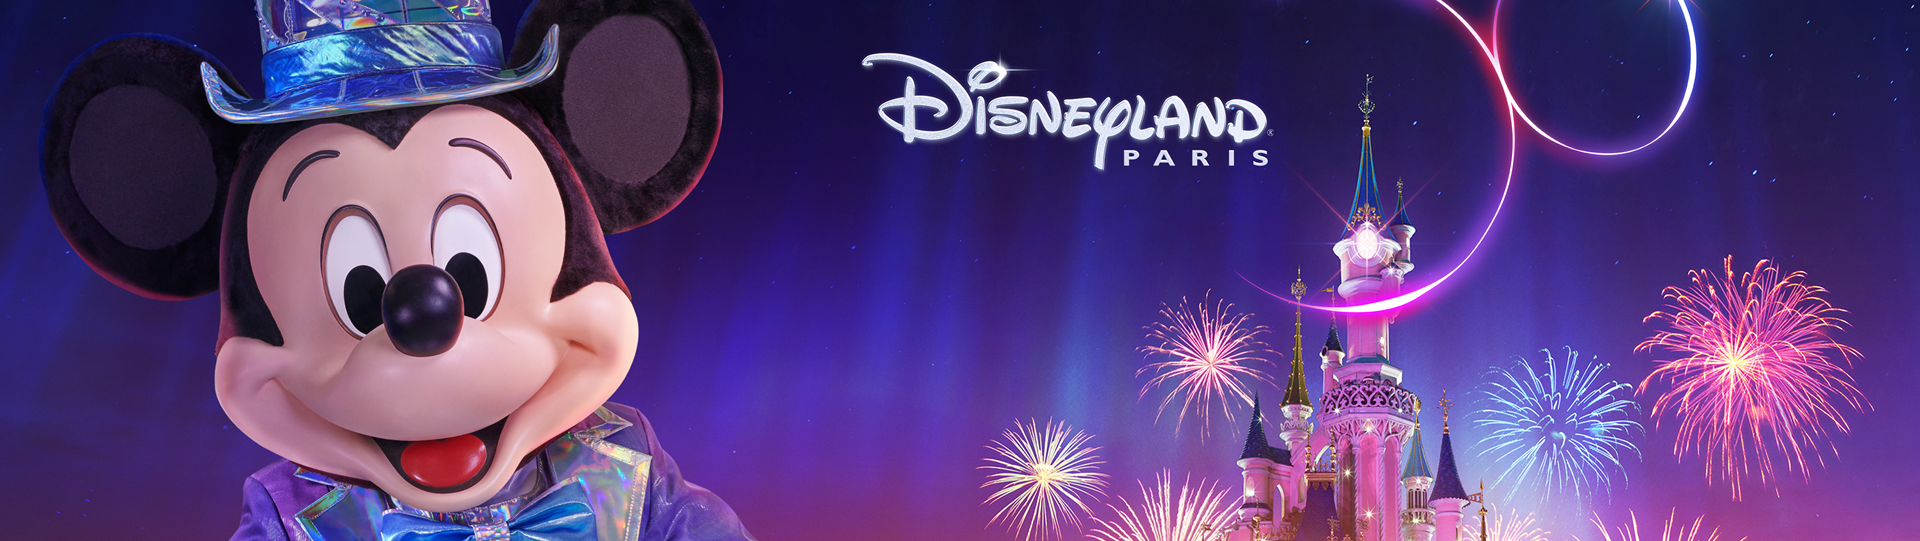 Disneyland® Paris viert zijn 30ste verjaardag! 